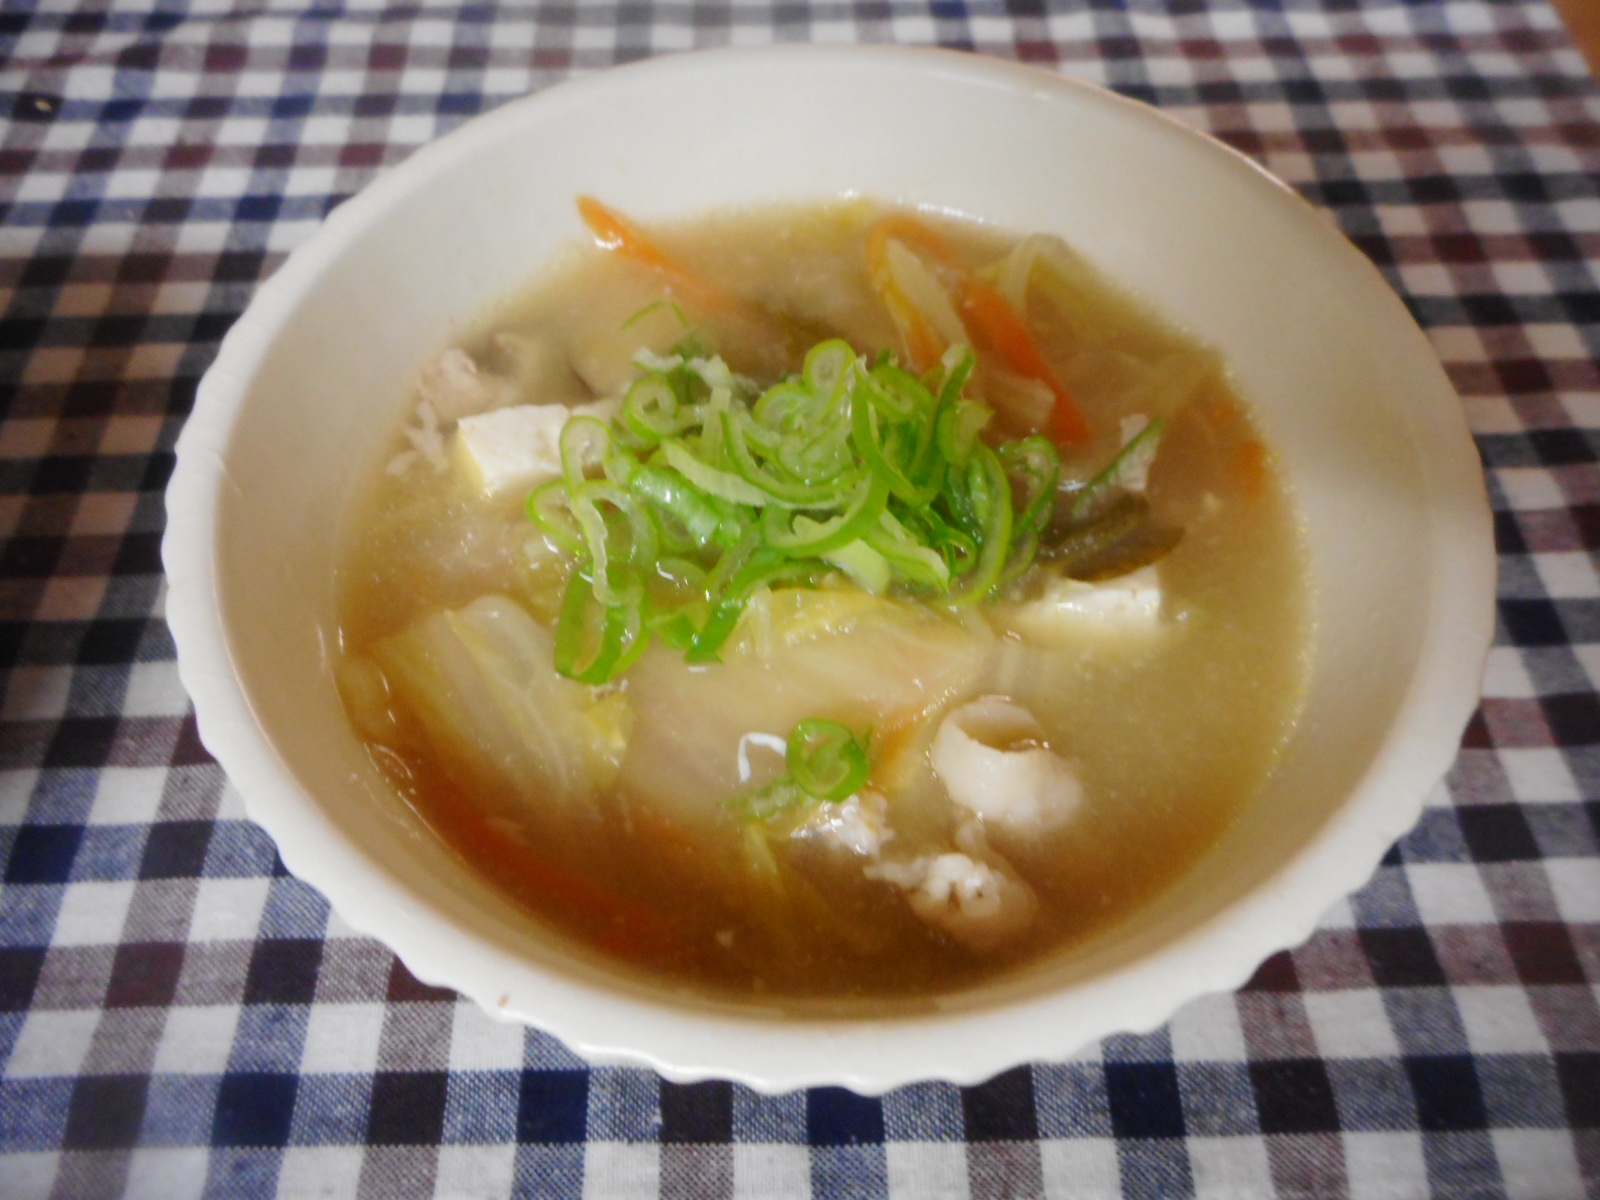 白菜、椎茸、豆腐の中華風スープ